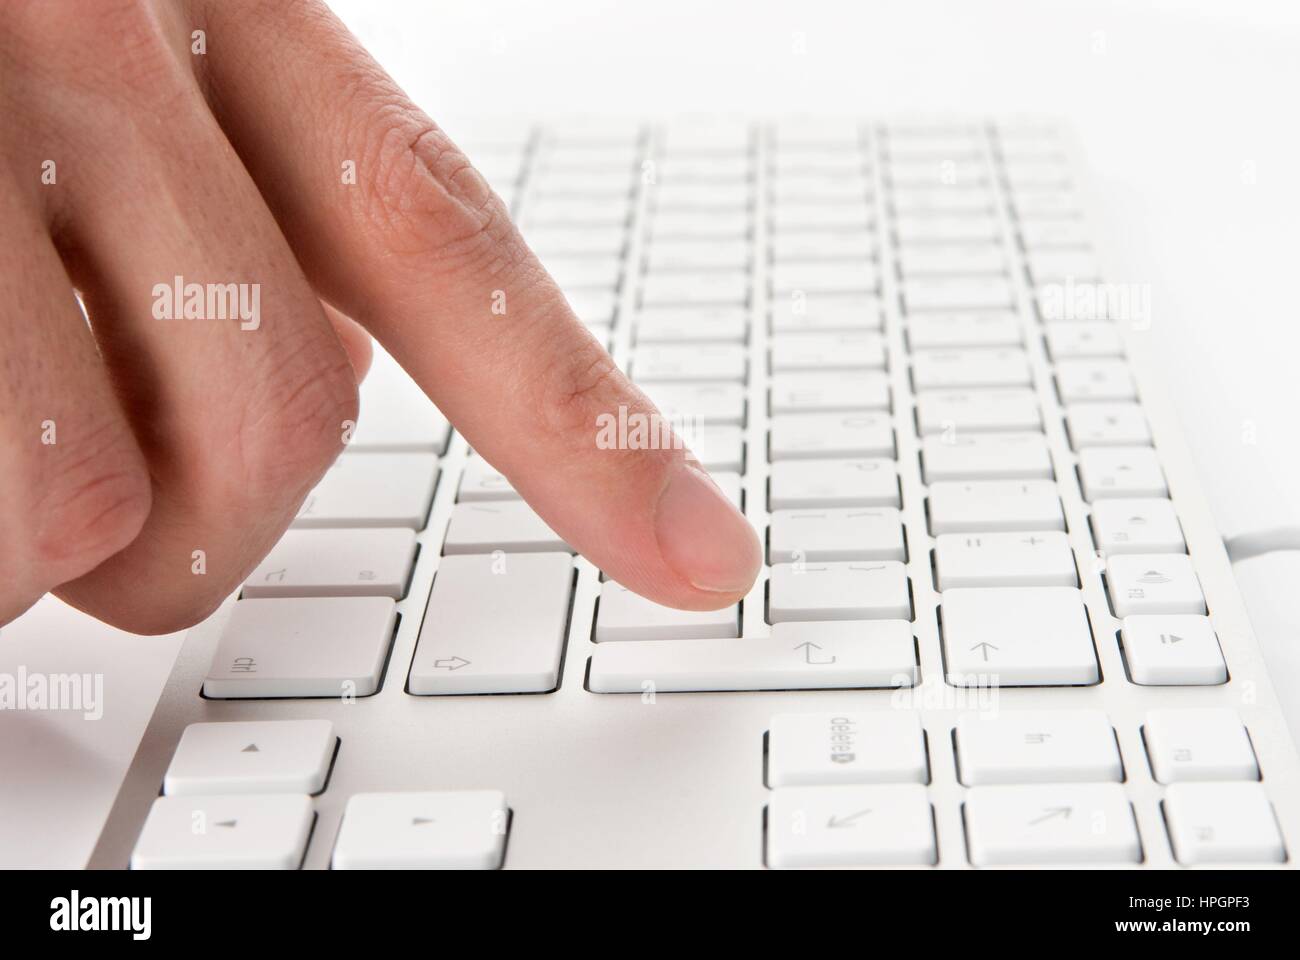 Звук печатает на клавиатуре. Пальцы на клавиатуре. Руки на клавиатуре. Нажатие на кнопку клавиатуры. Рука нажимает на кнопку на клавиатуре.